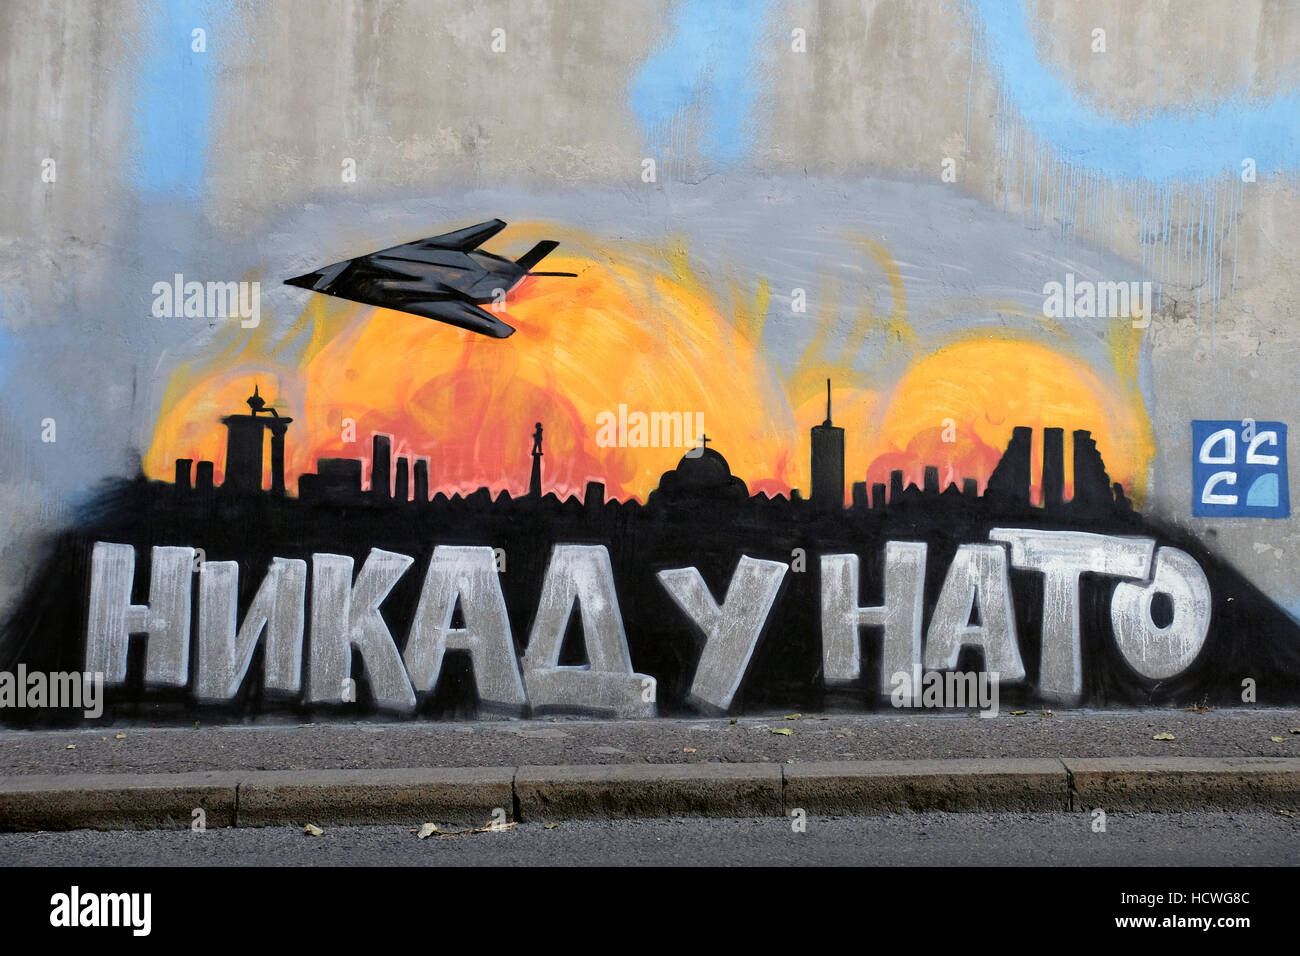 Ein Graffiti Darstellung einer amerikanischen f-117 Stealth Fighter Jet fliegen über Belgrad während des Kosovo-Krieges 1999 in der Stadt Belgrad Hauptstadt der Republik Serbien. Die f-117 wurde während einer Mission gegen die Armee von Jugoslawien am 27. März 1999, während der Operation Allied Force abgeschossen. Stockfoto